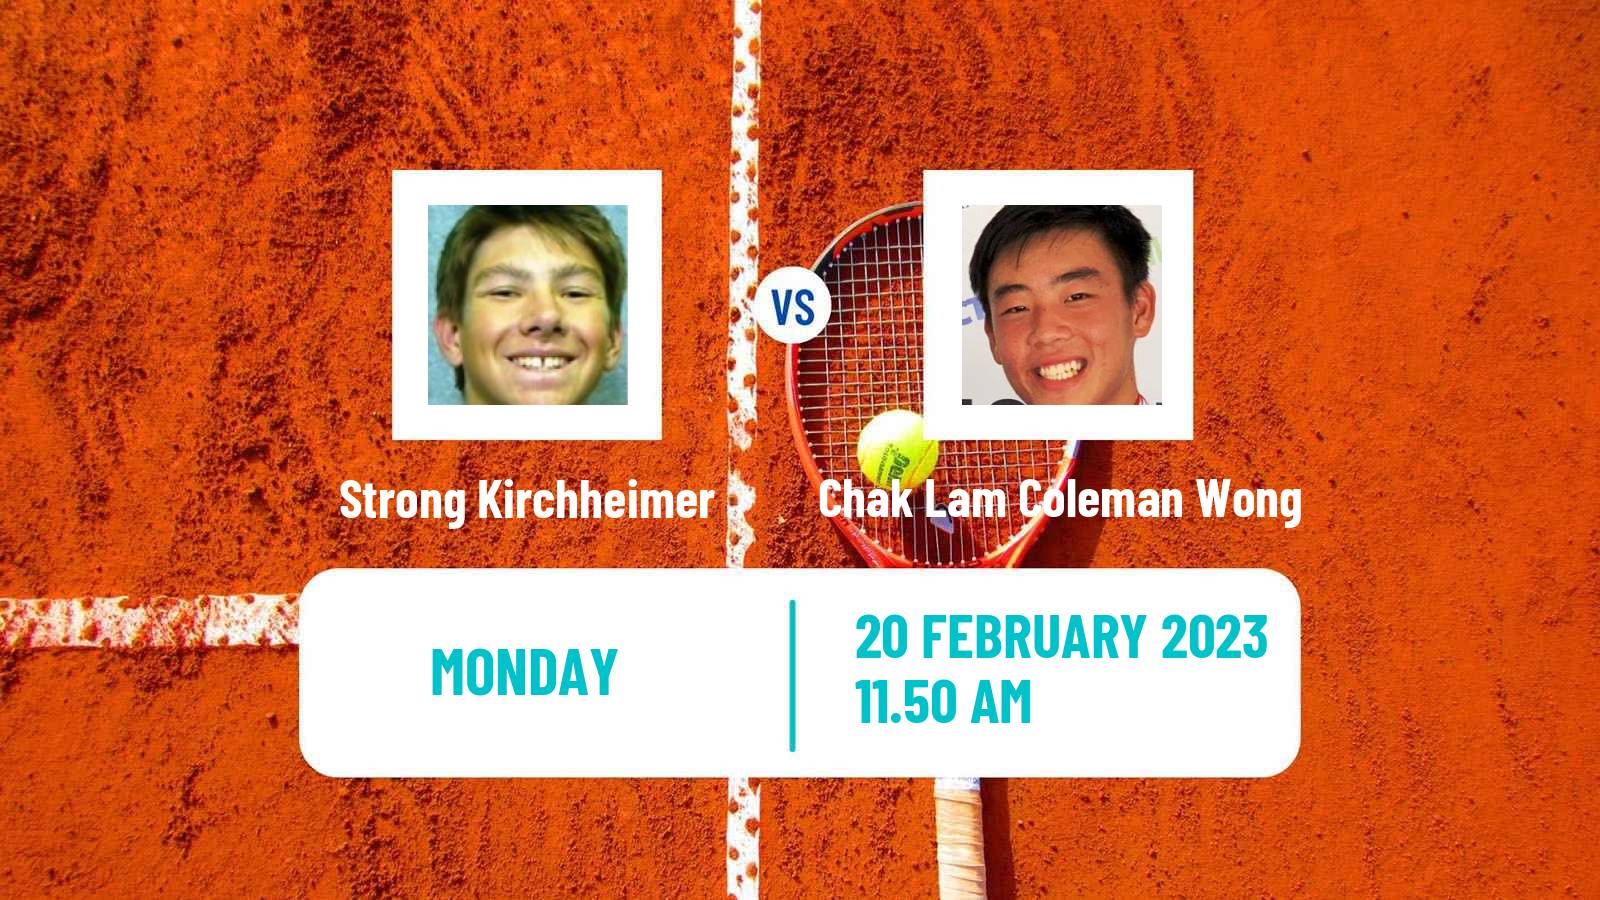 Tennis ATP Challenger Strong Kirchheimer - Chak Lam Coleman Wong